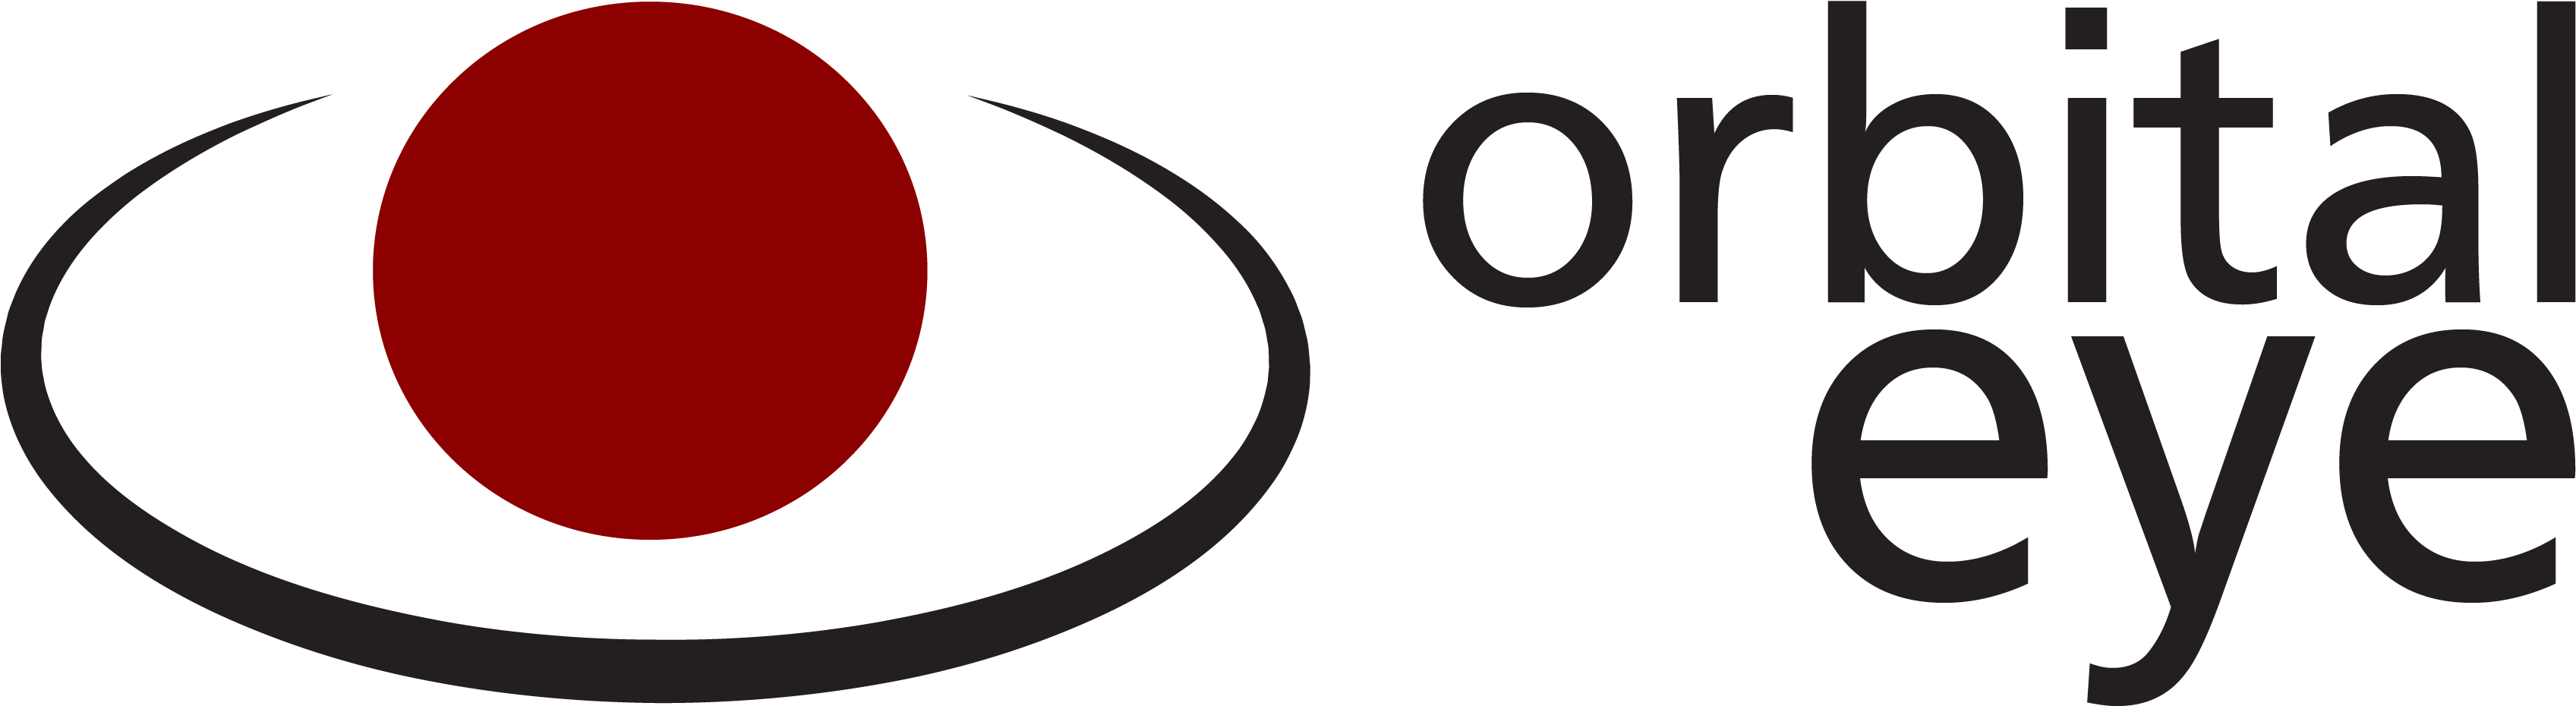 Orbital Eye - Orbital Eye Delft (3429x994)